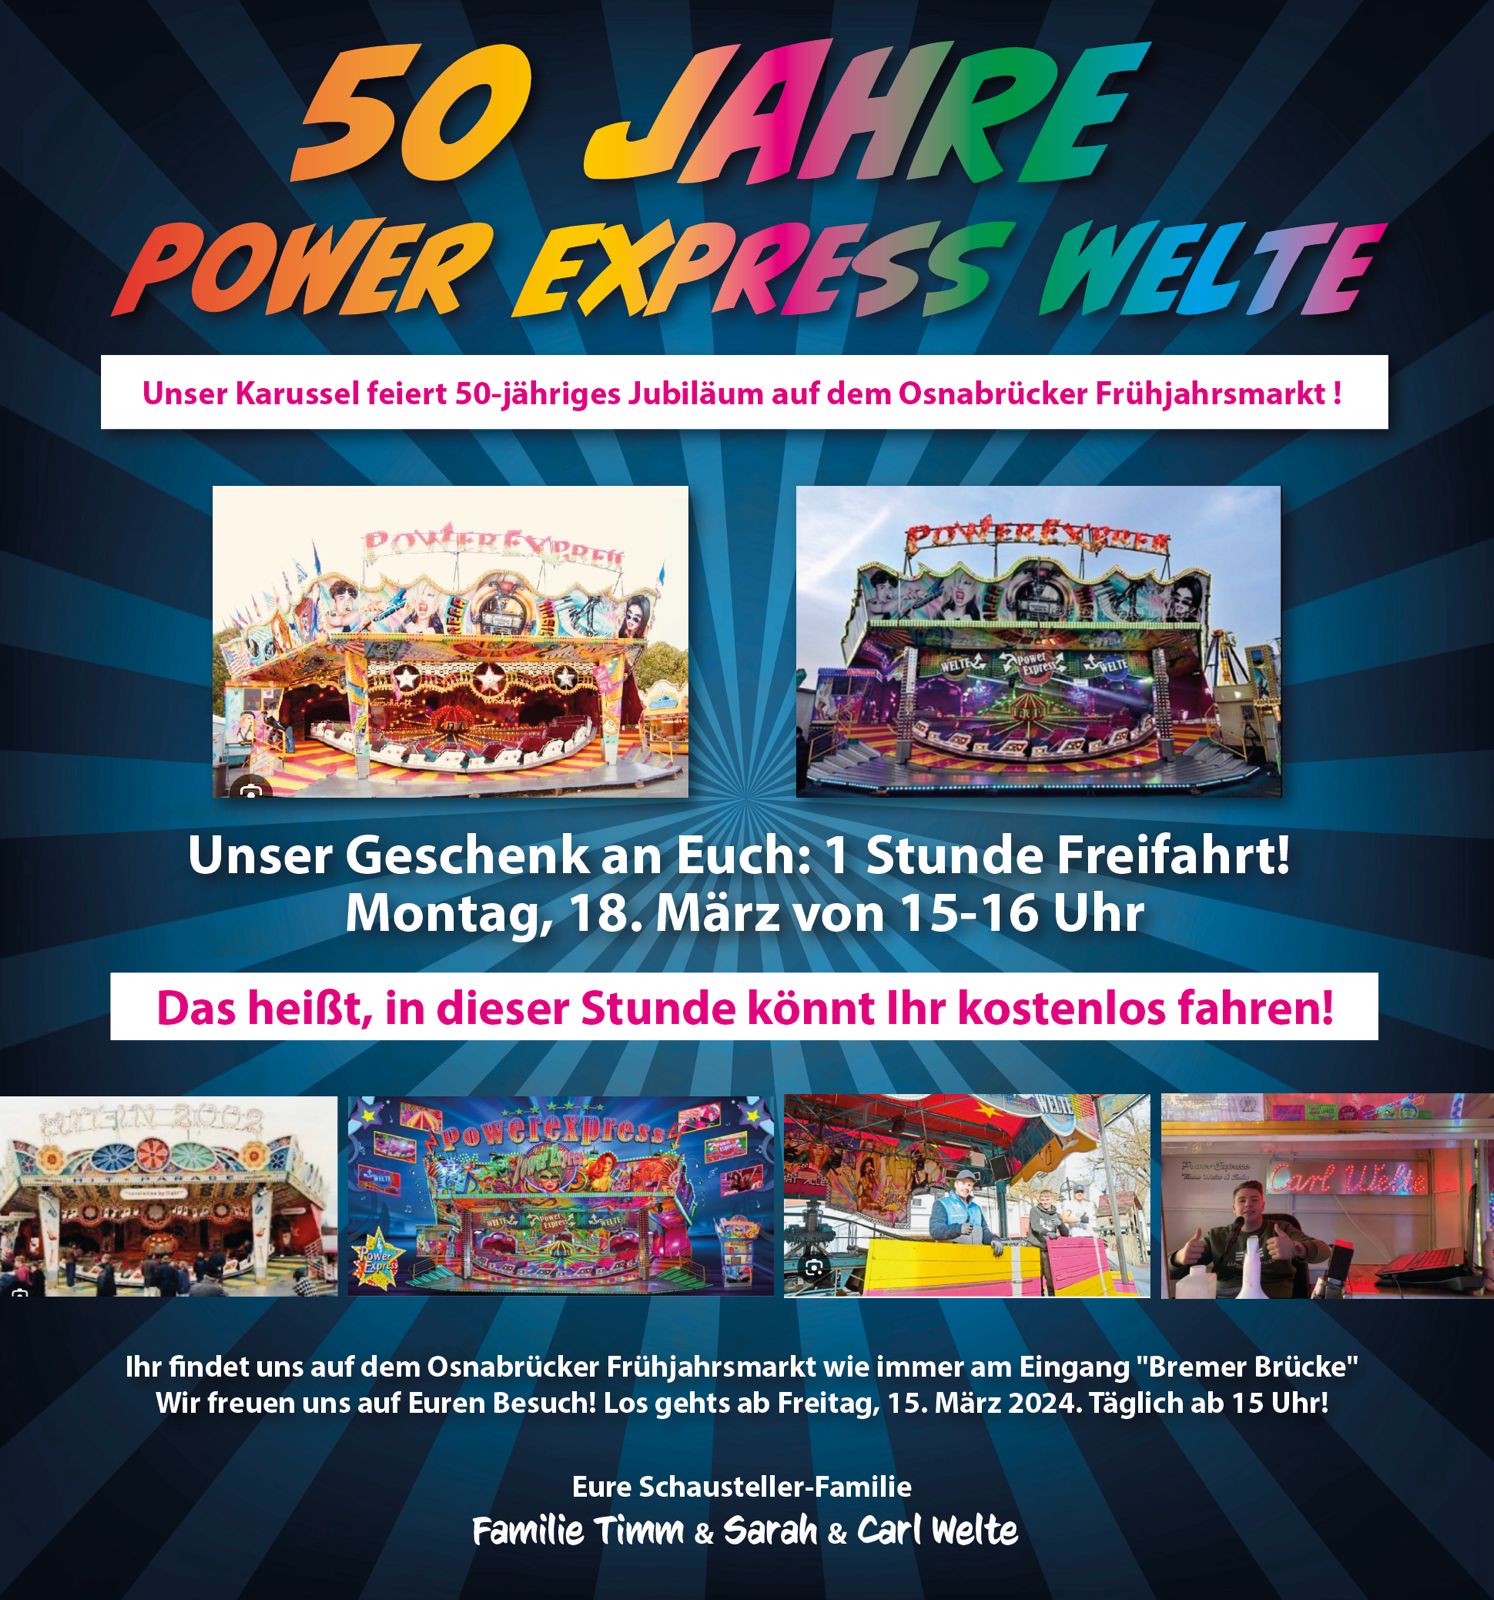 50 Jahre "Welte Power Express": Ein Fahrgeschäft, das Generationen bewegt